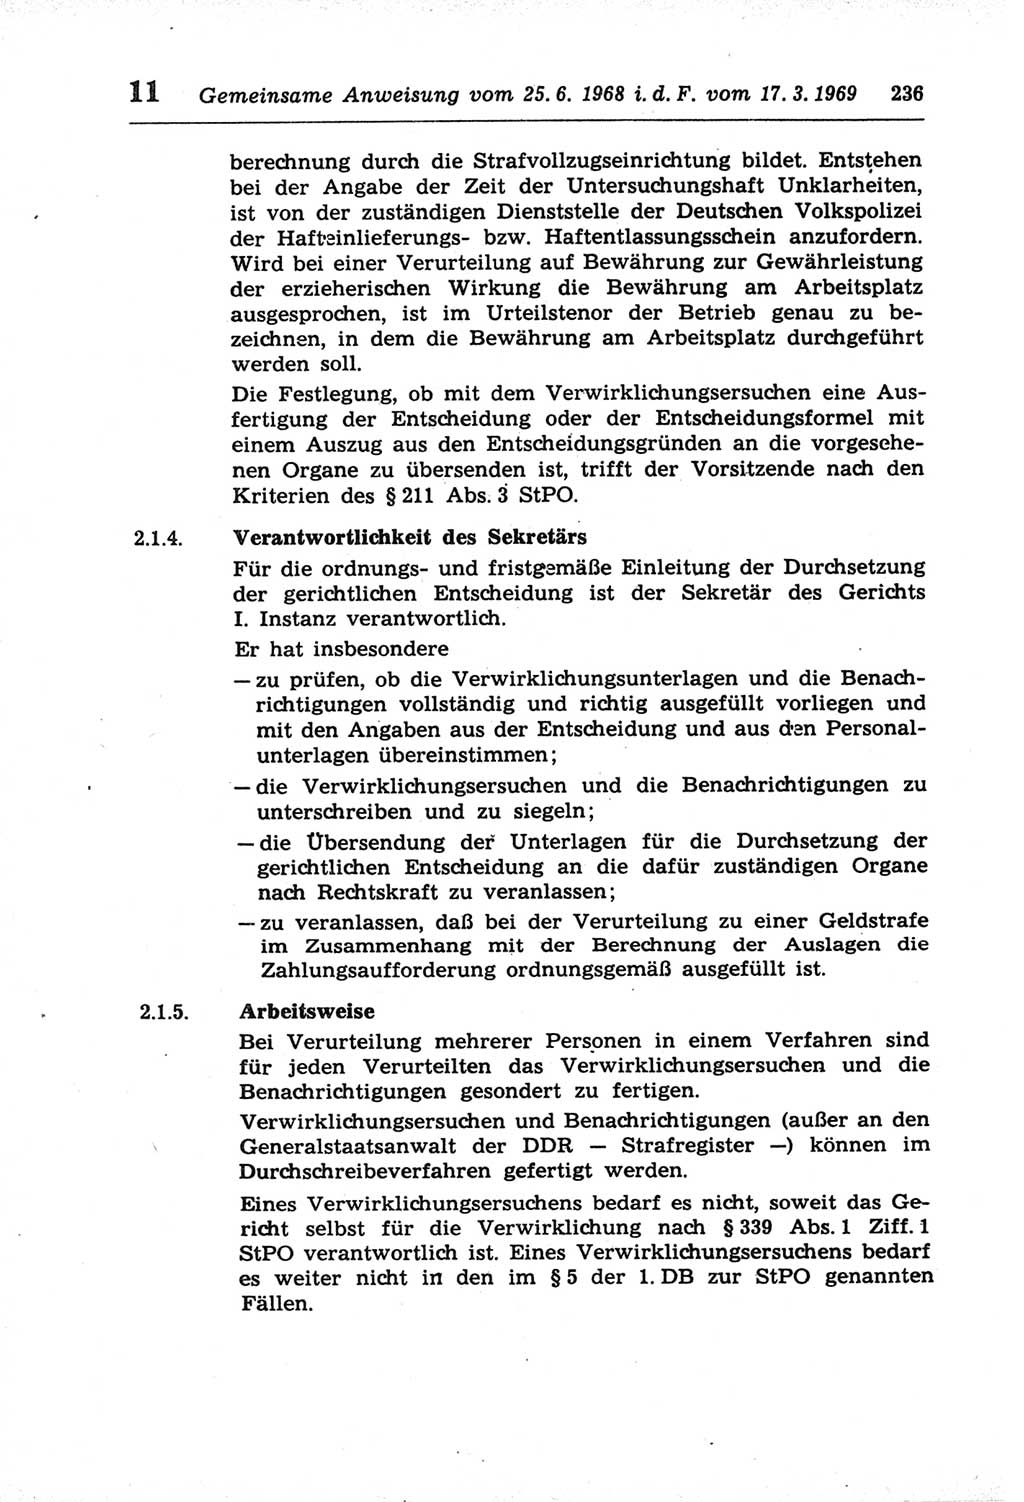 Strafprozeßordnung (StPO) der Deutschen Demokratischen Republik (DDR) und angrenzende Gesetze und Bestimmungen 1968, Seite 236 (StPO Ges. Bstgn. DDR 1968, S. 236)